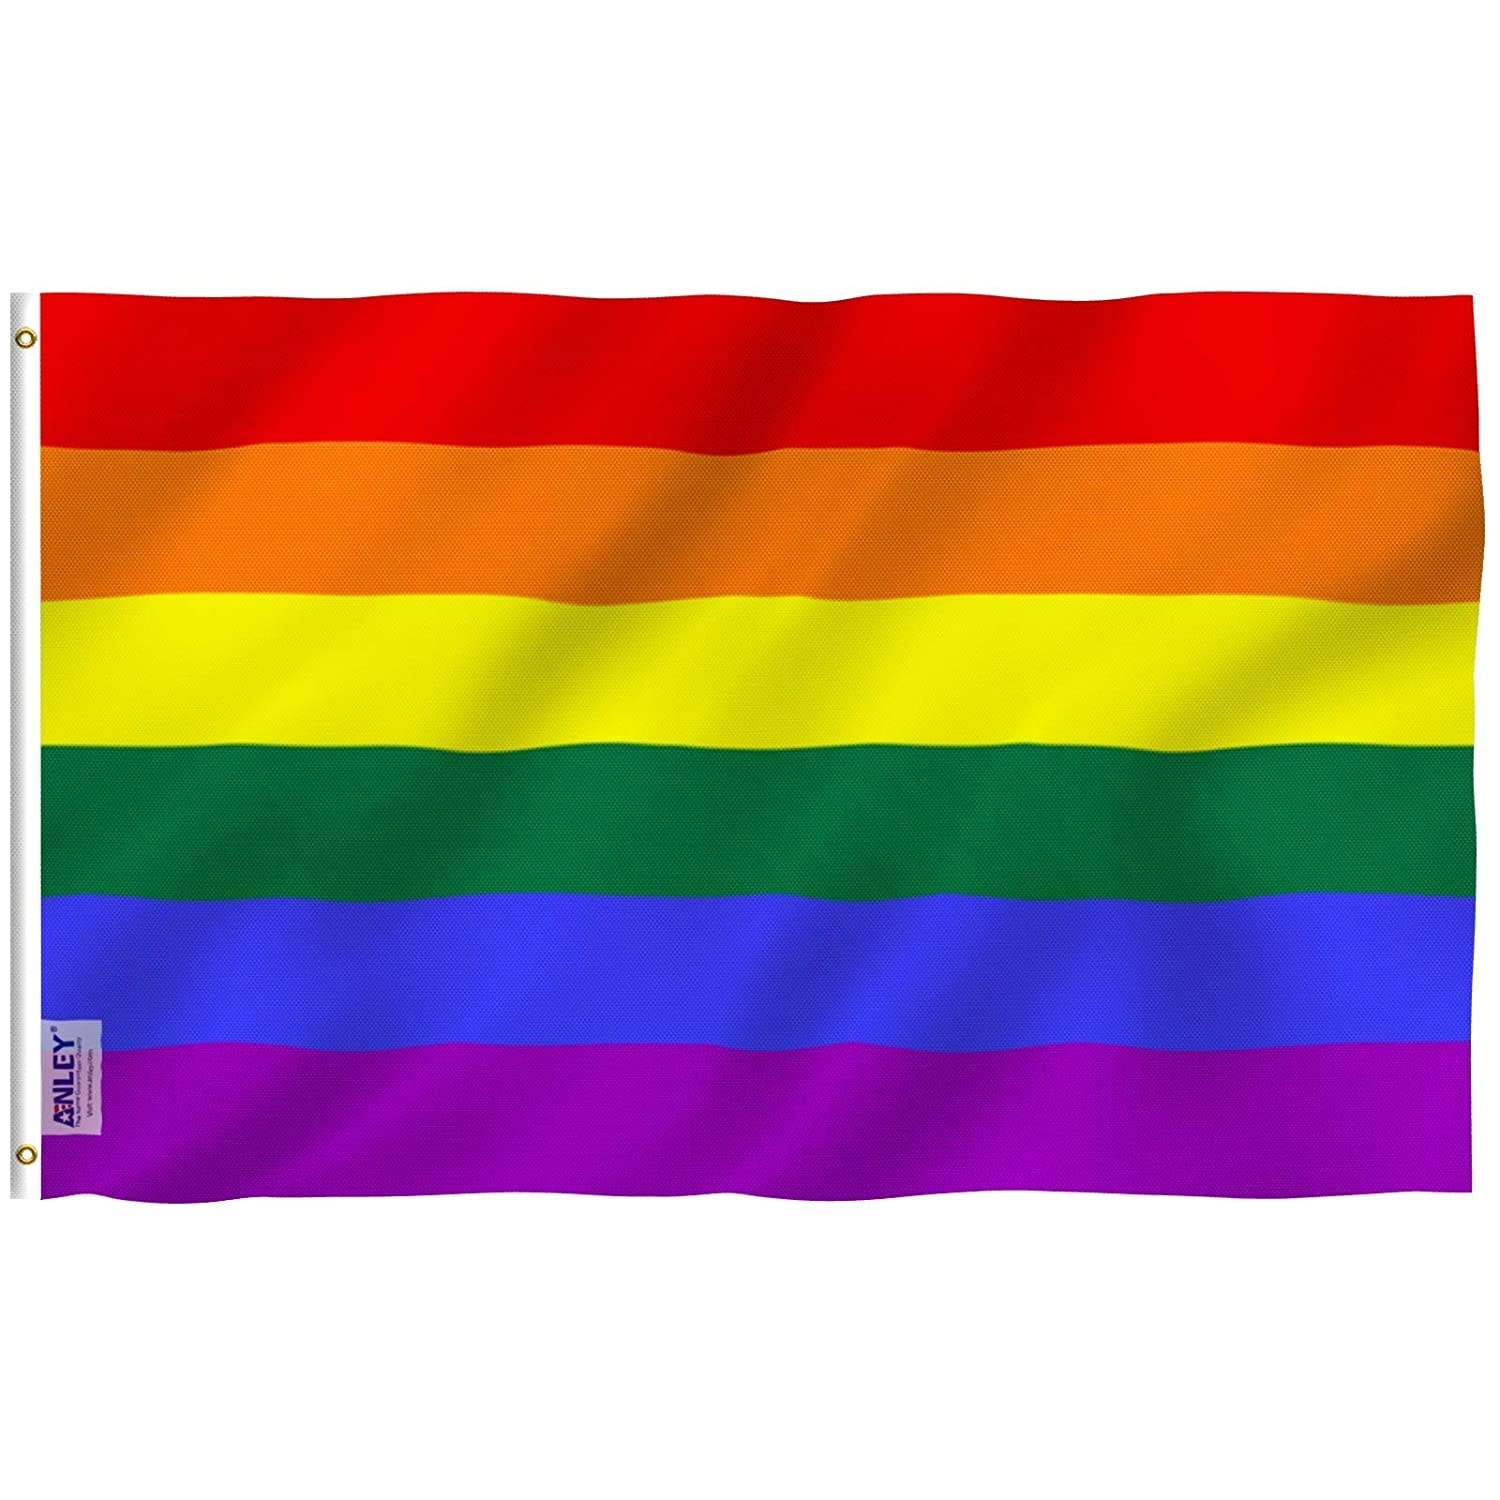 A Rainbow flag.